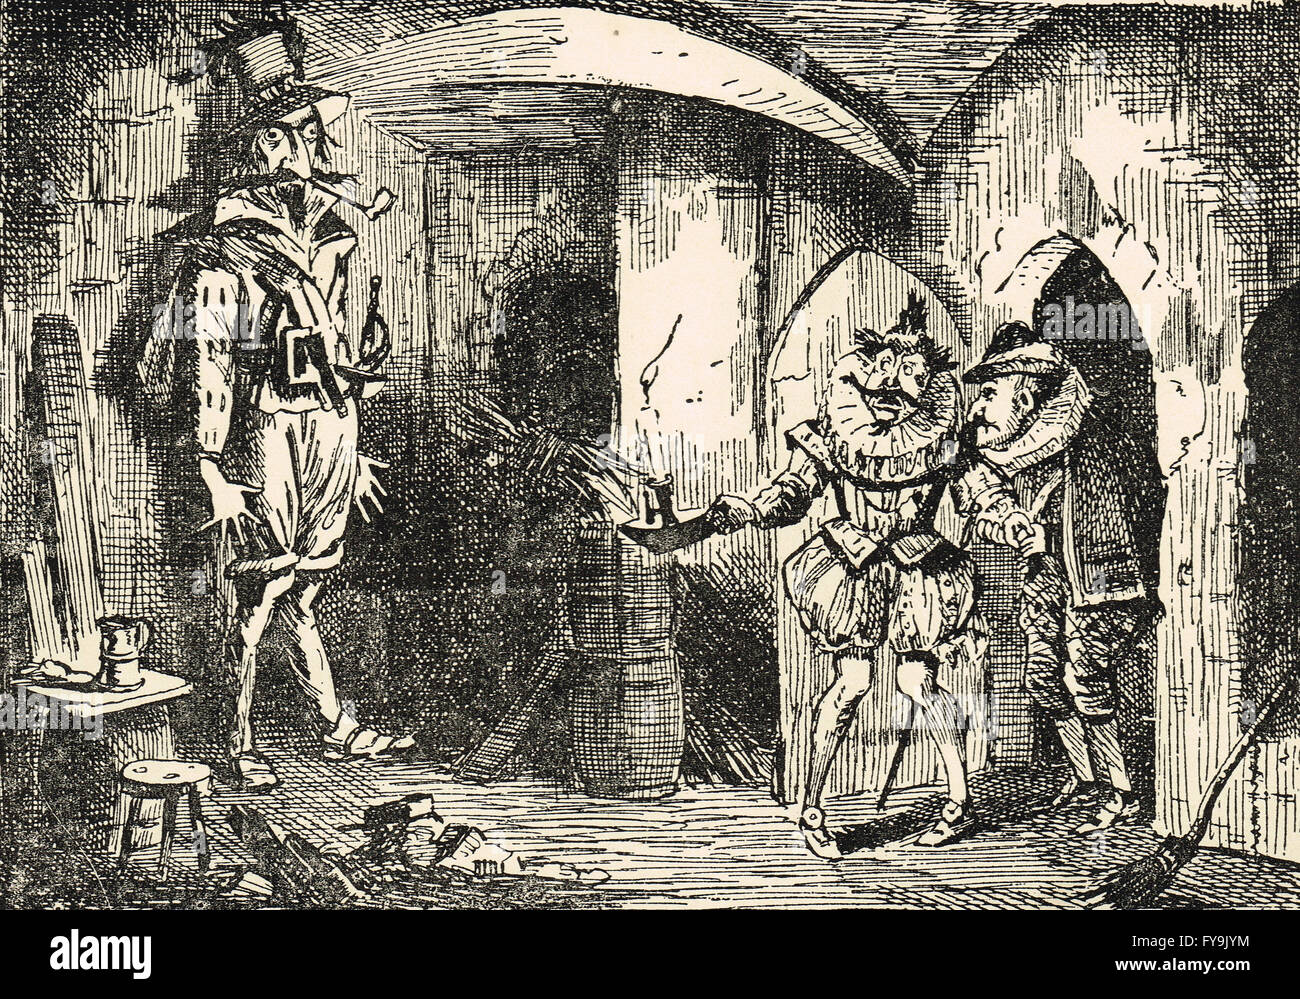 La conspiration, le 5 novembre 1605, John Leech illustration de Guy Fawkes découvert par Thomas Howard, comte de Suffolk et Baron Monteagle. Banque D'Images